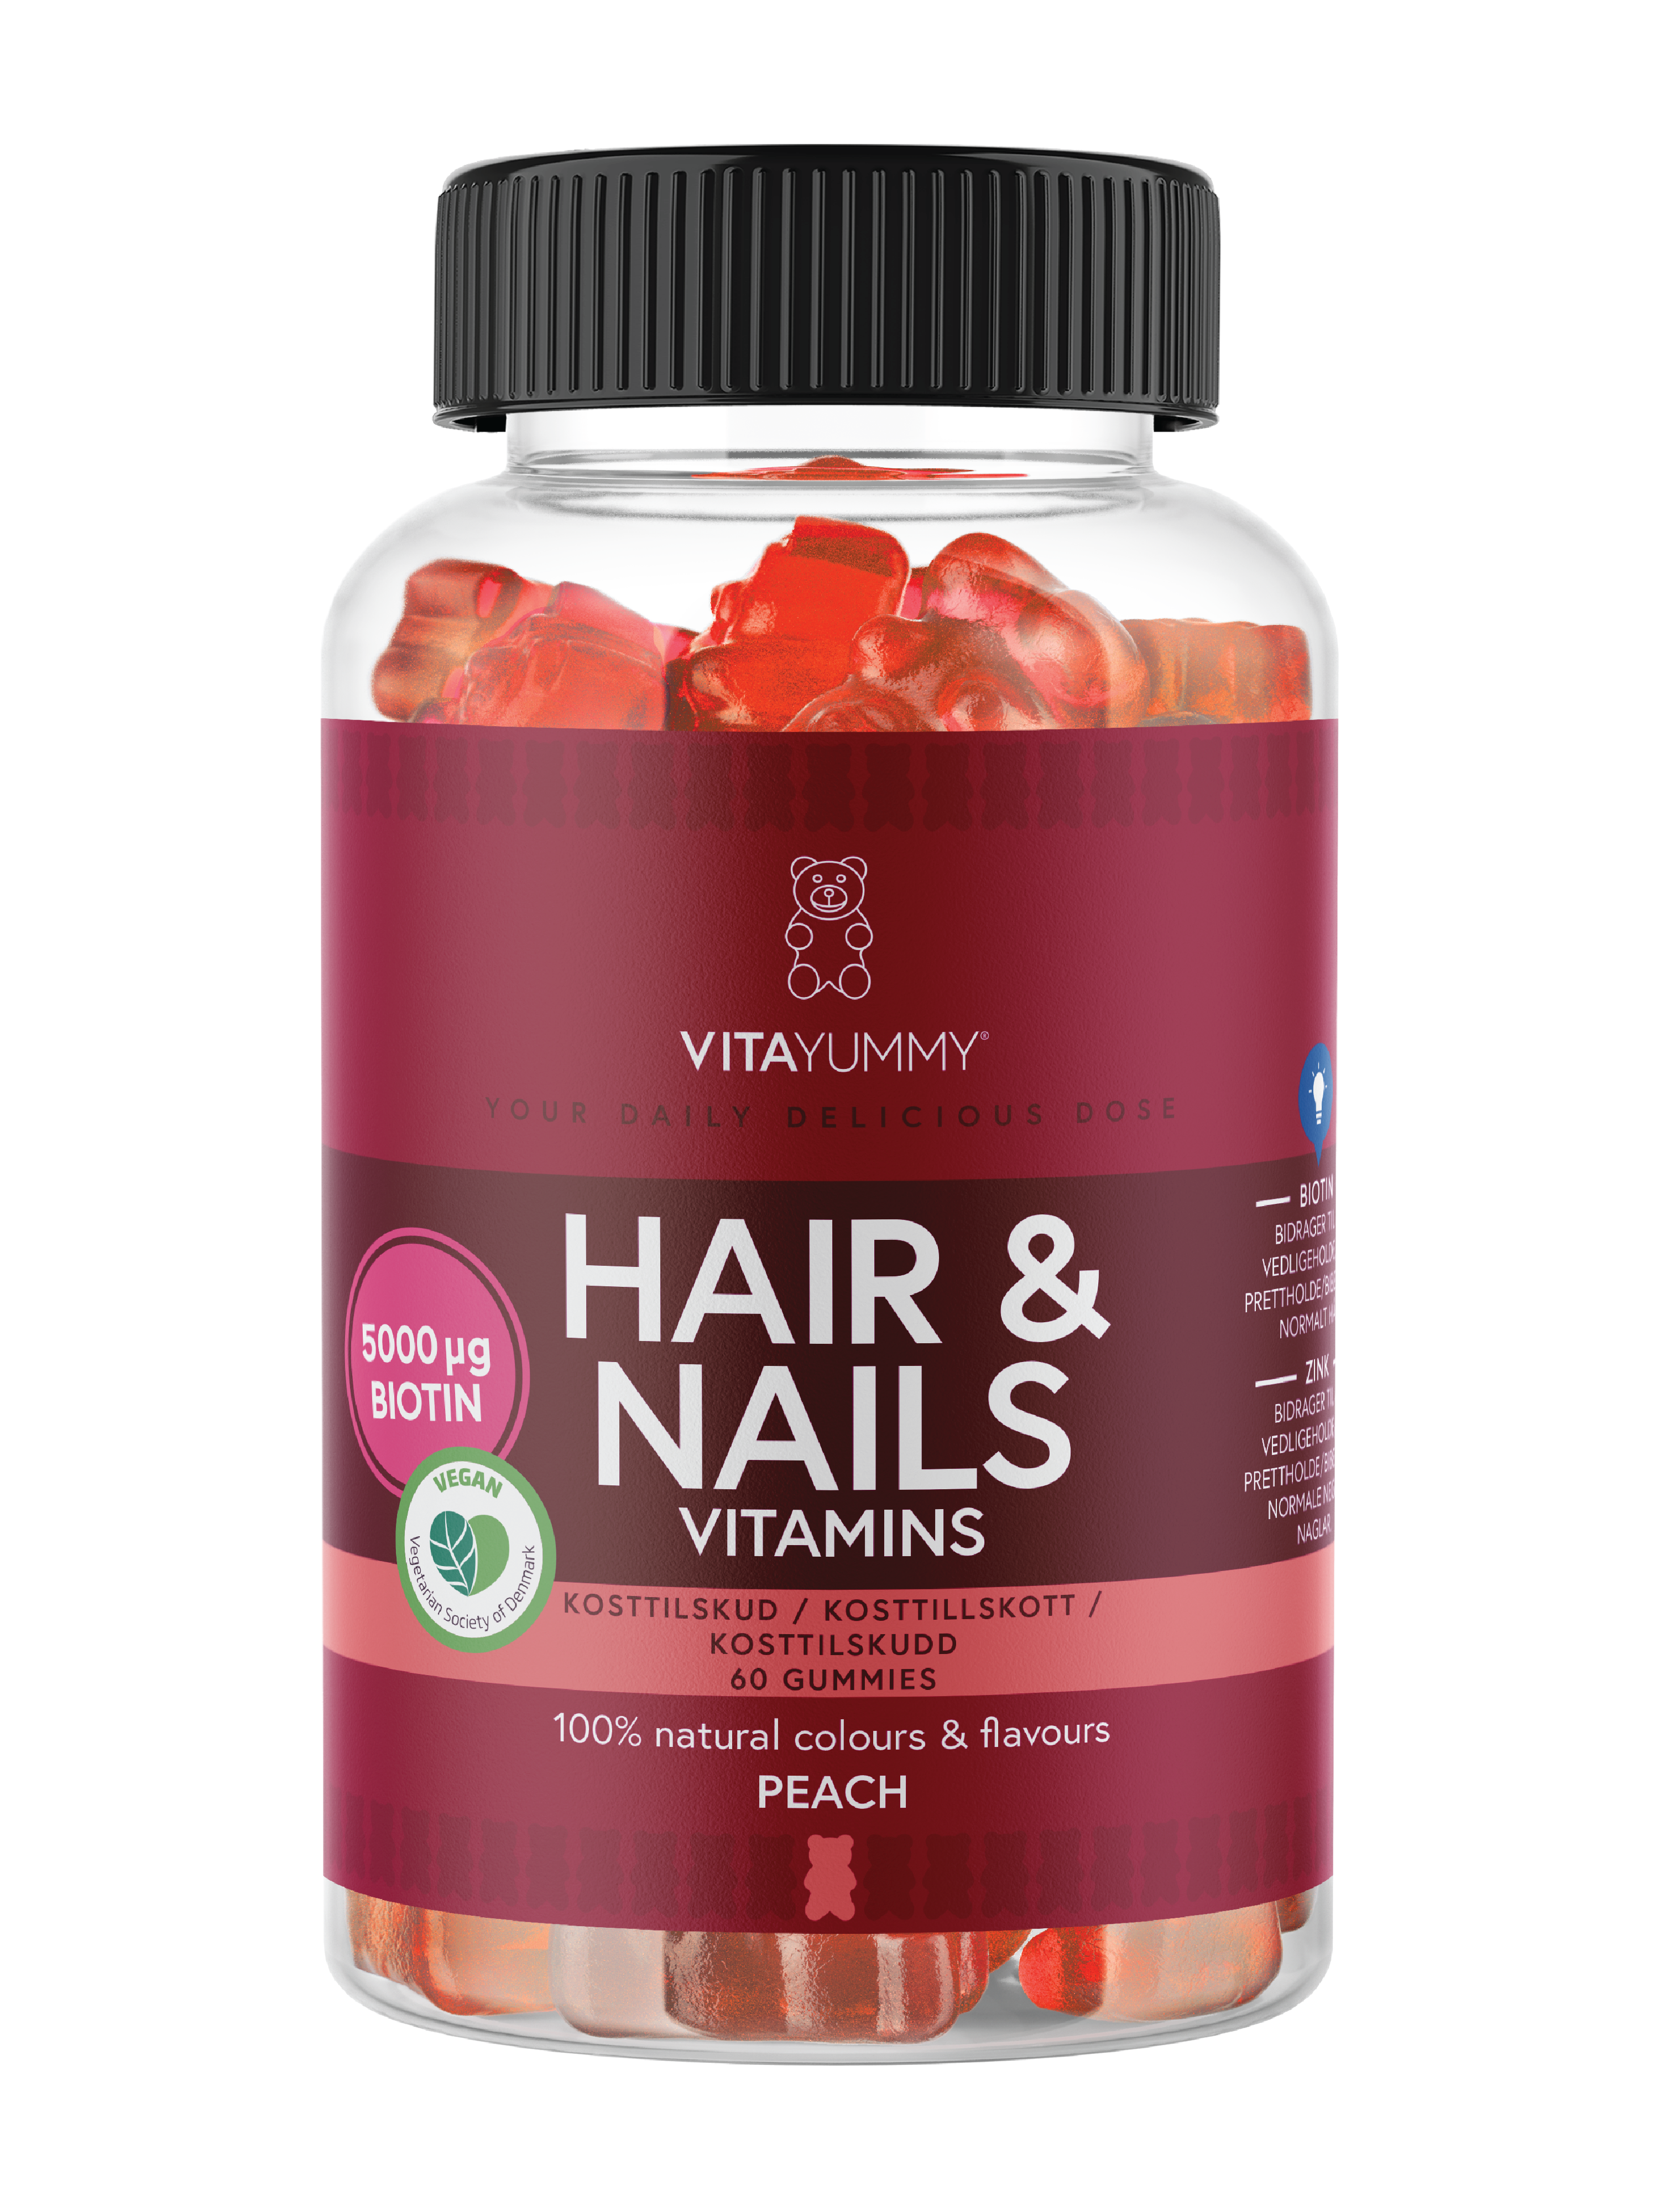 VitaYummy Hair & Nails Vitamins, Fersken, 60 stk.